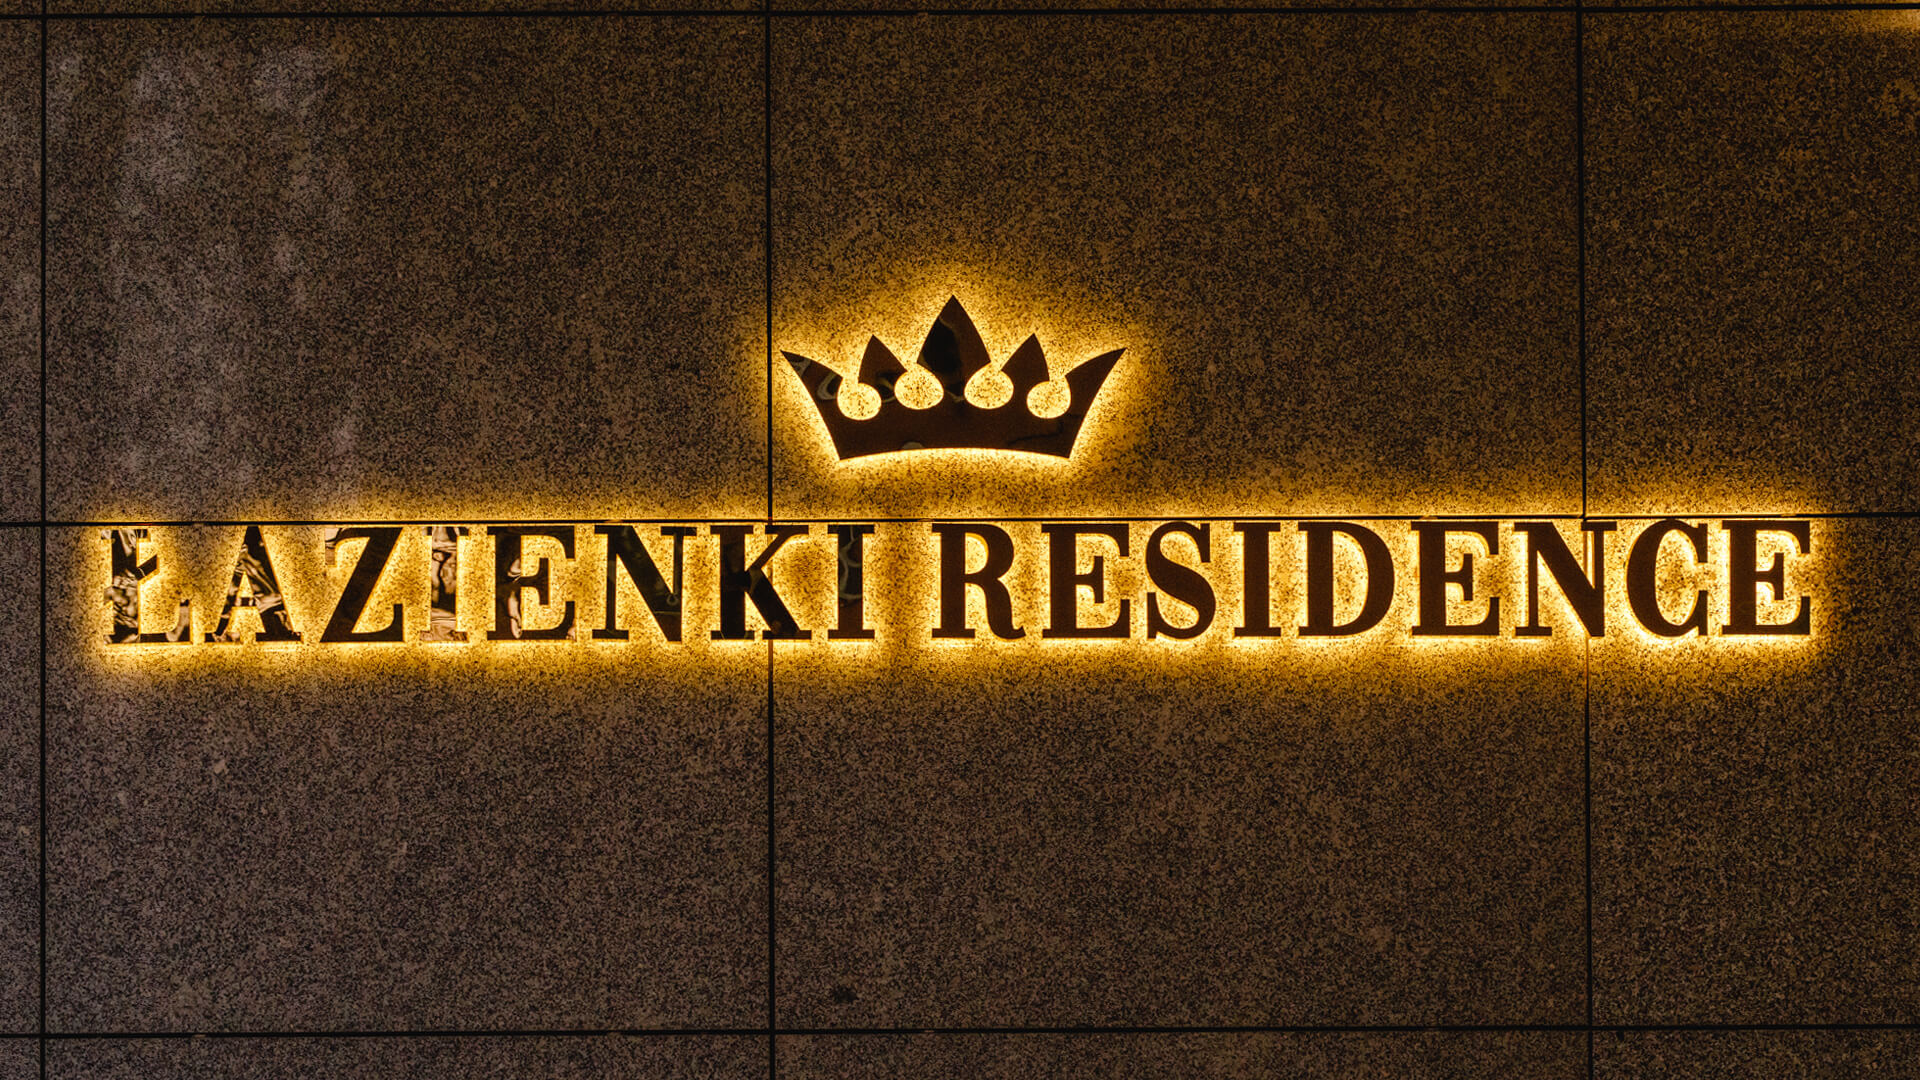 Residenza Bagni - Lettera di benvenuto in acciaio inox in oro, retroilluminata a LED sulla parete, con una corona nel logo.